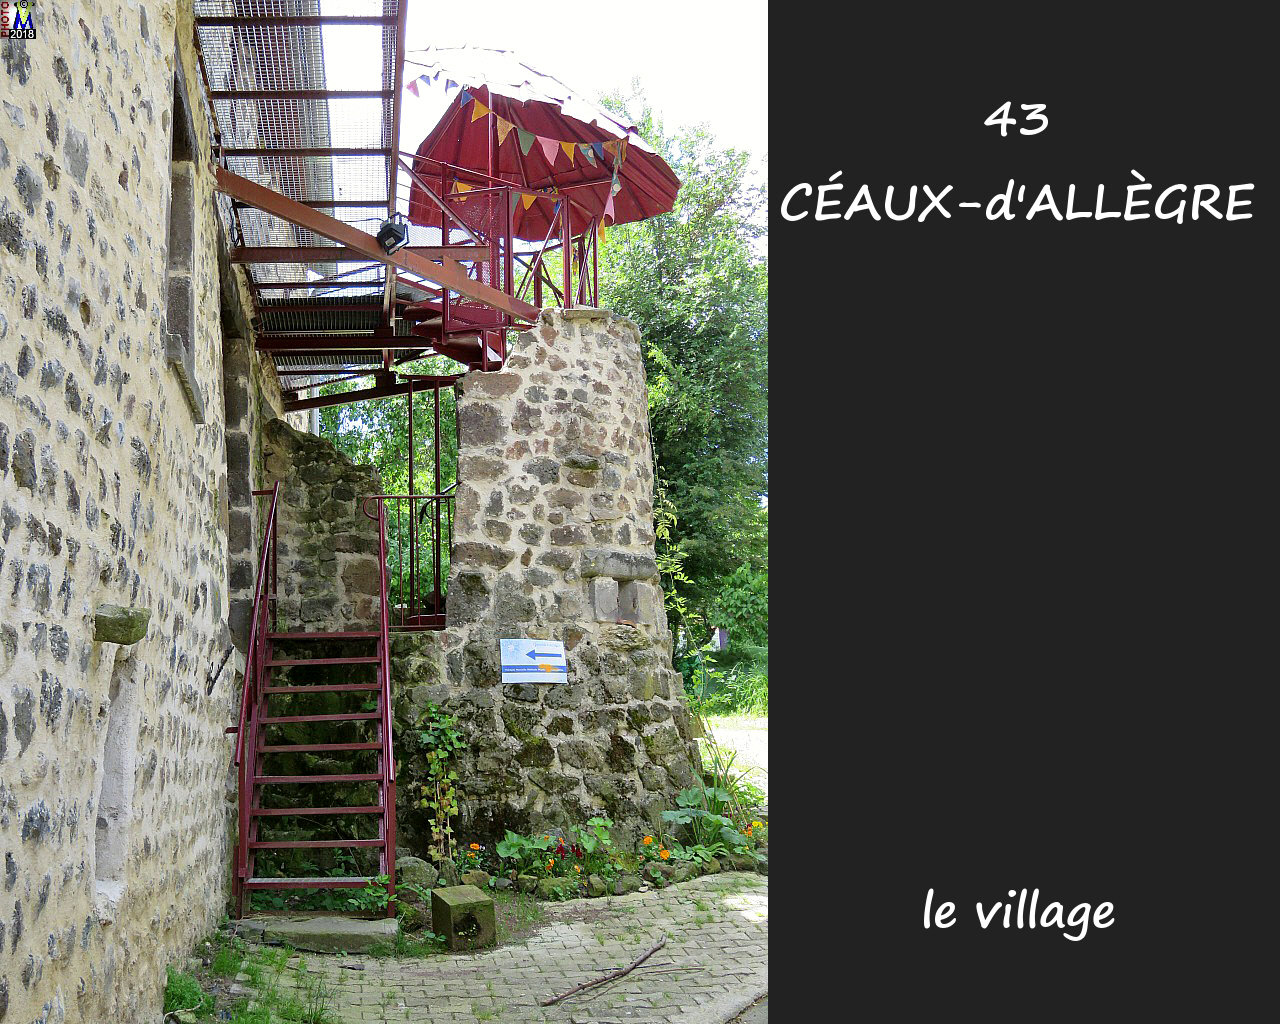 43CEAUX-ALLEGRE_village_106.jpg